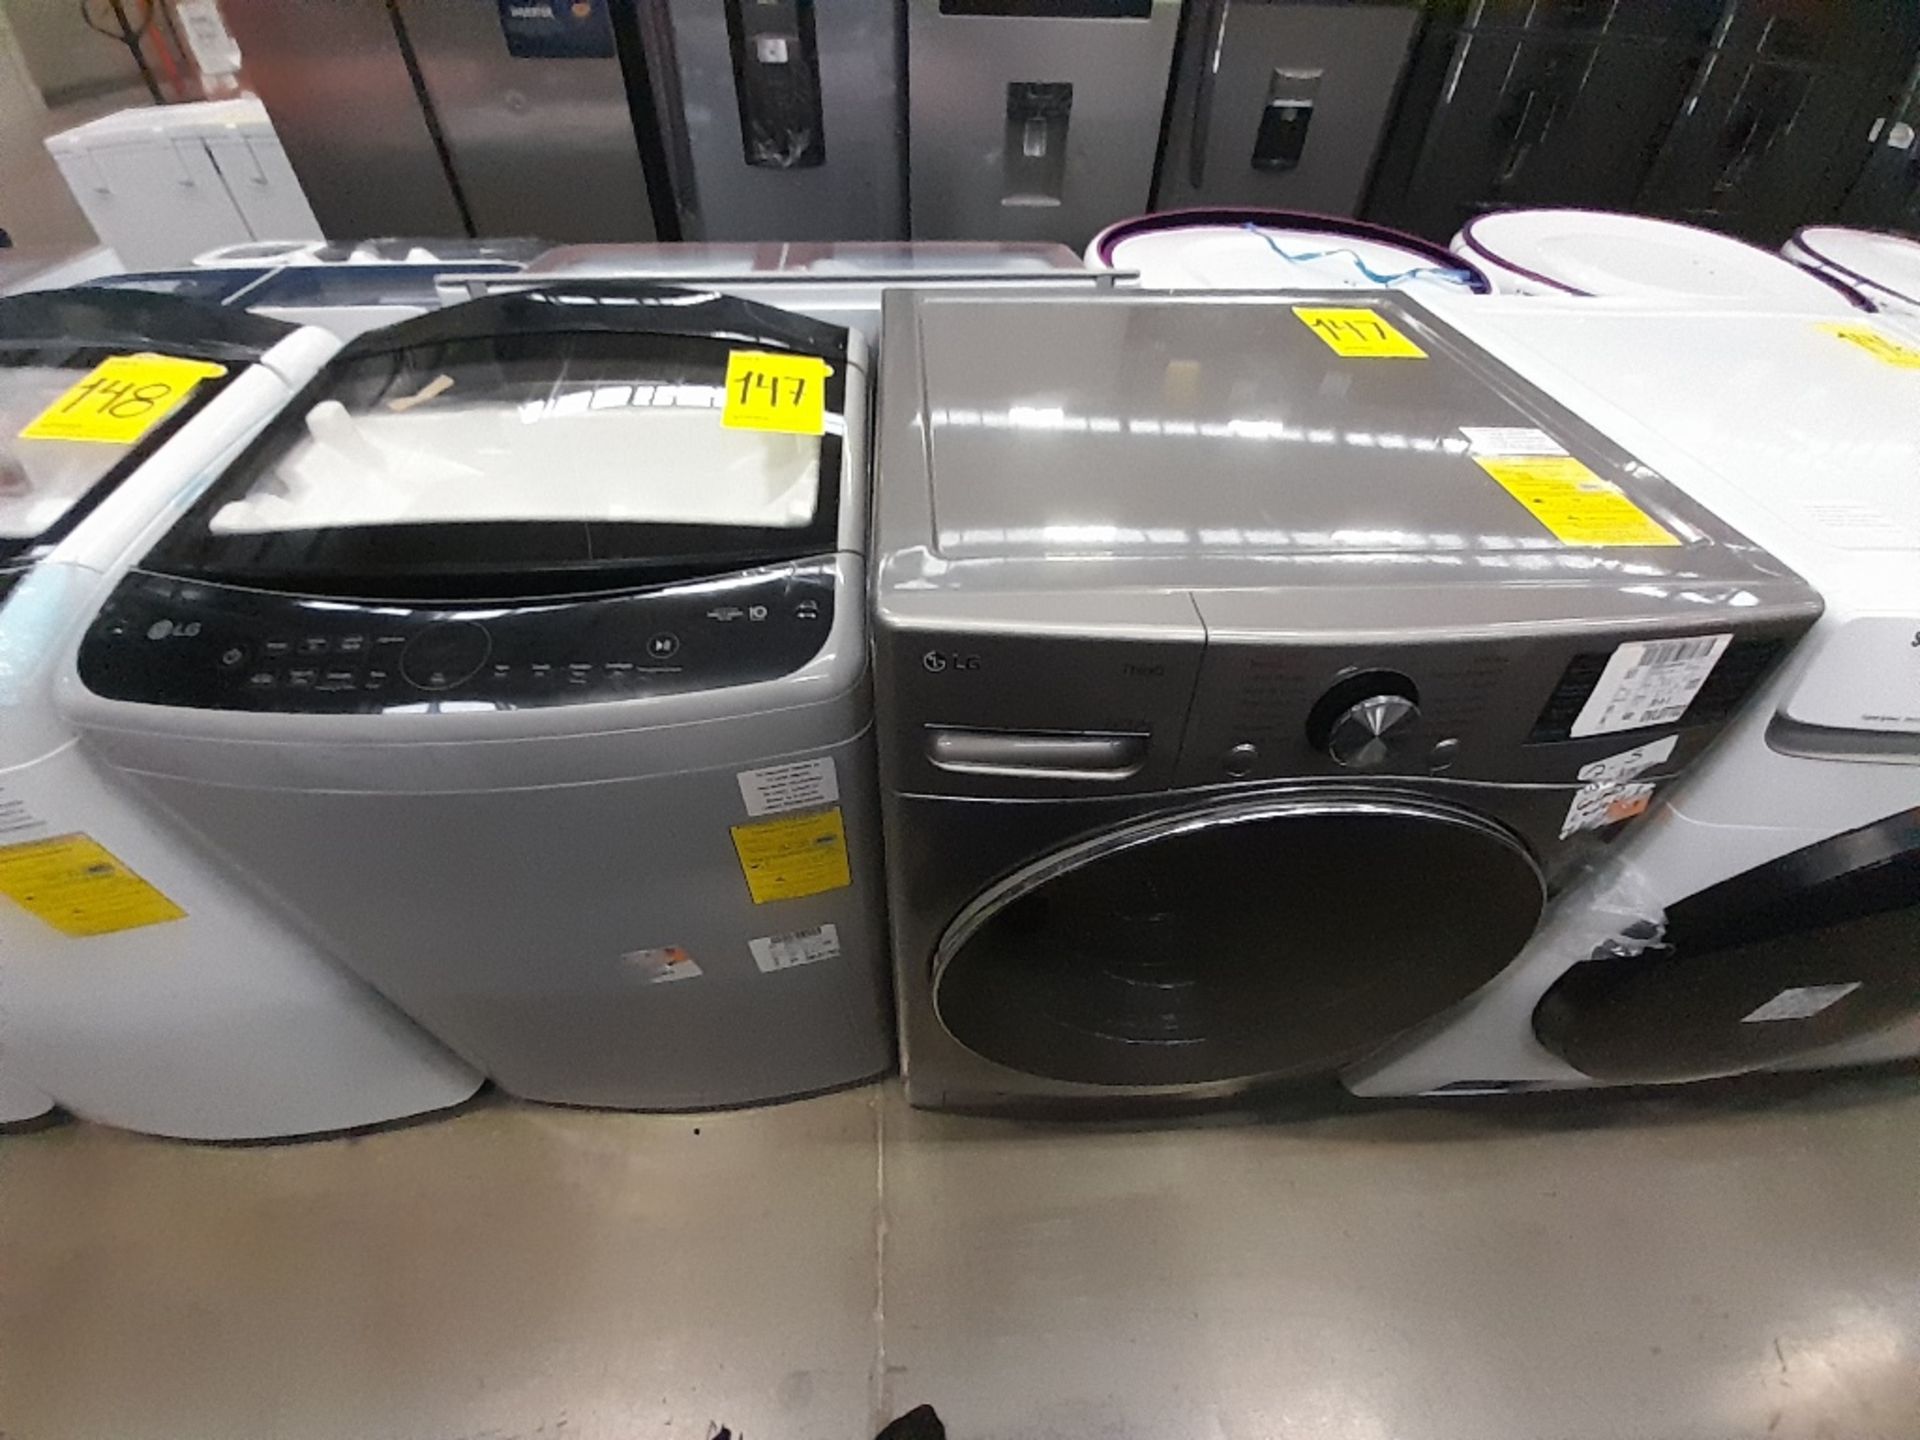 Lote de 1 lavadora y 1 Lavasecadora contiene: 1 lavadora de 18 KG, Marca LG, Modelo WT18DV6, Serie